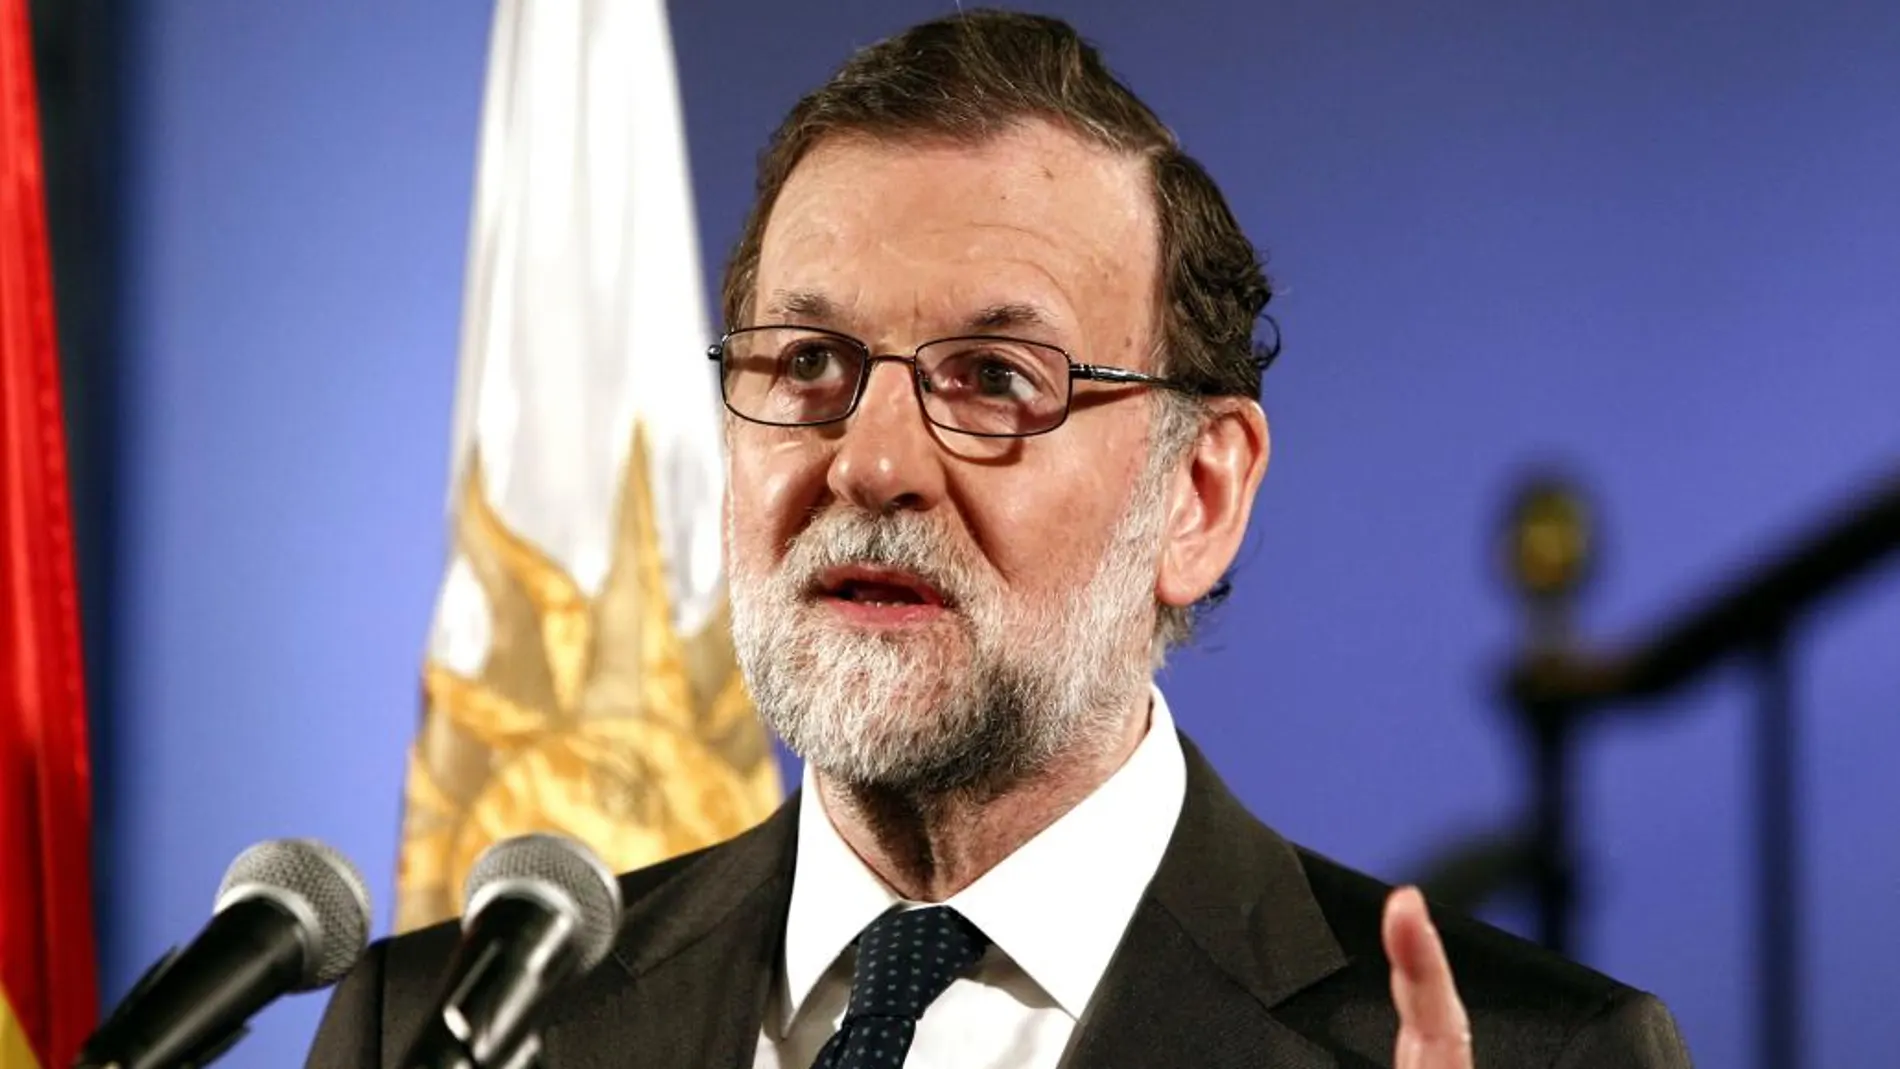 El presidente del Gobierno de España, Mariano Rajoy, durante una recepción en la embajada de España en Montevideo